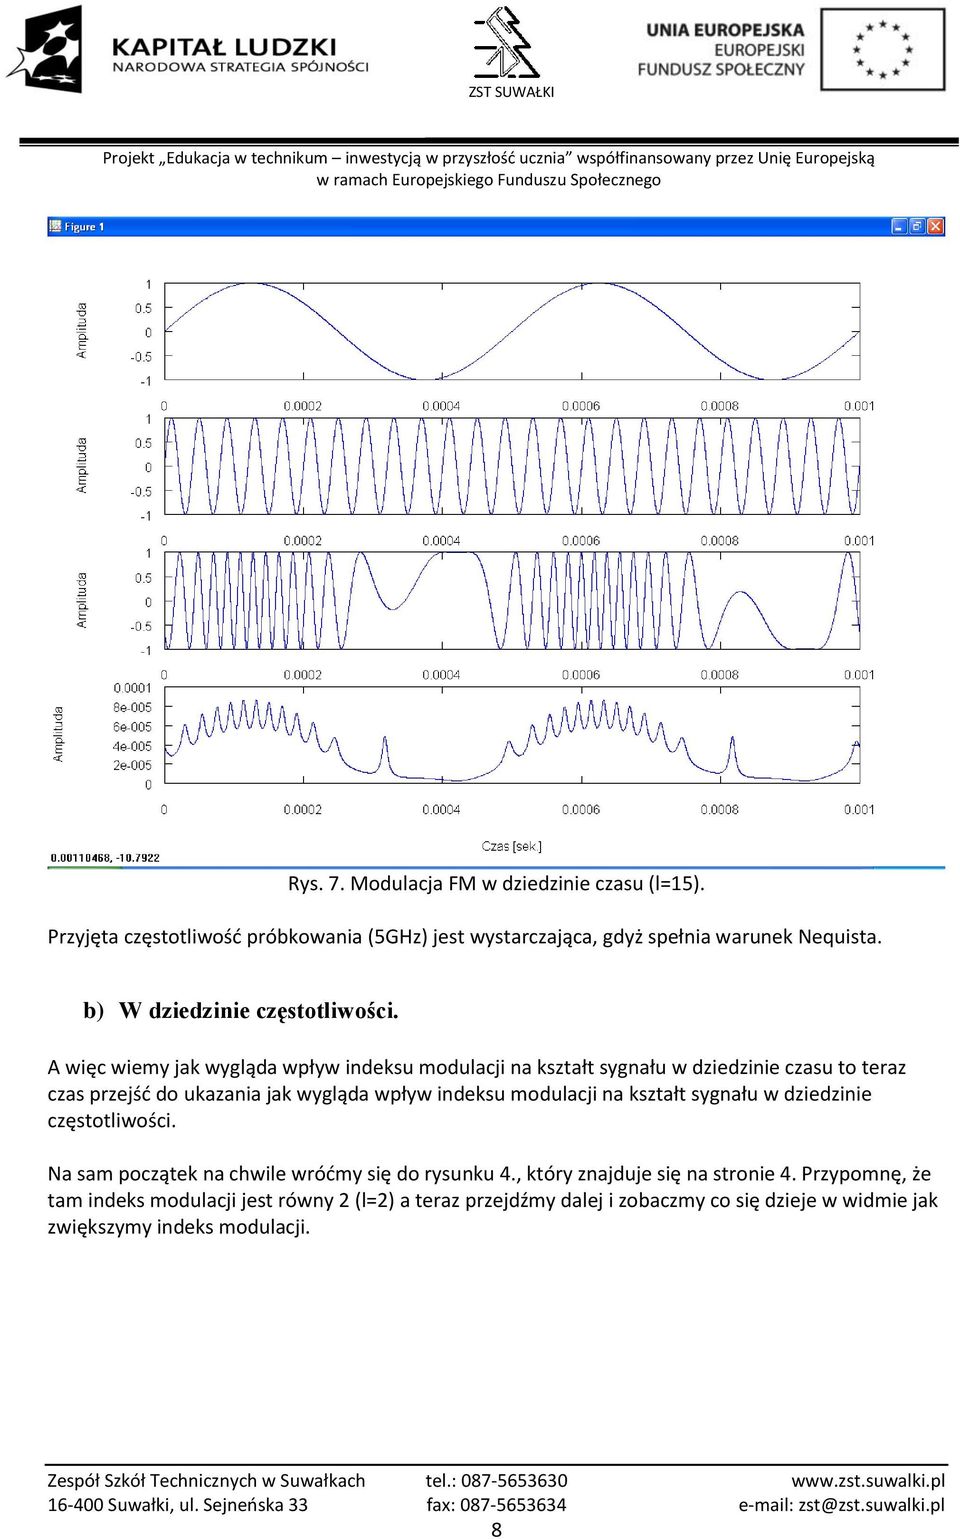 A więc wiemy jak wygląda wpływ indeksu modulacji na kształt sygnału w dziedzinie czasu to teraz czas przejść do ukazania jak wygląda wpływ indeksu